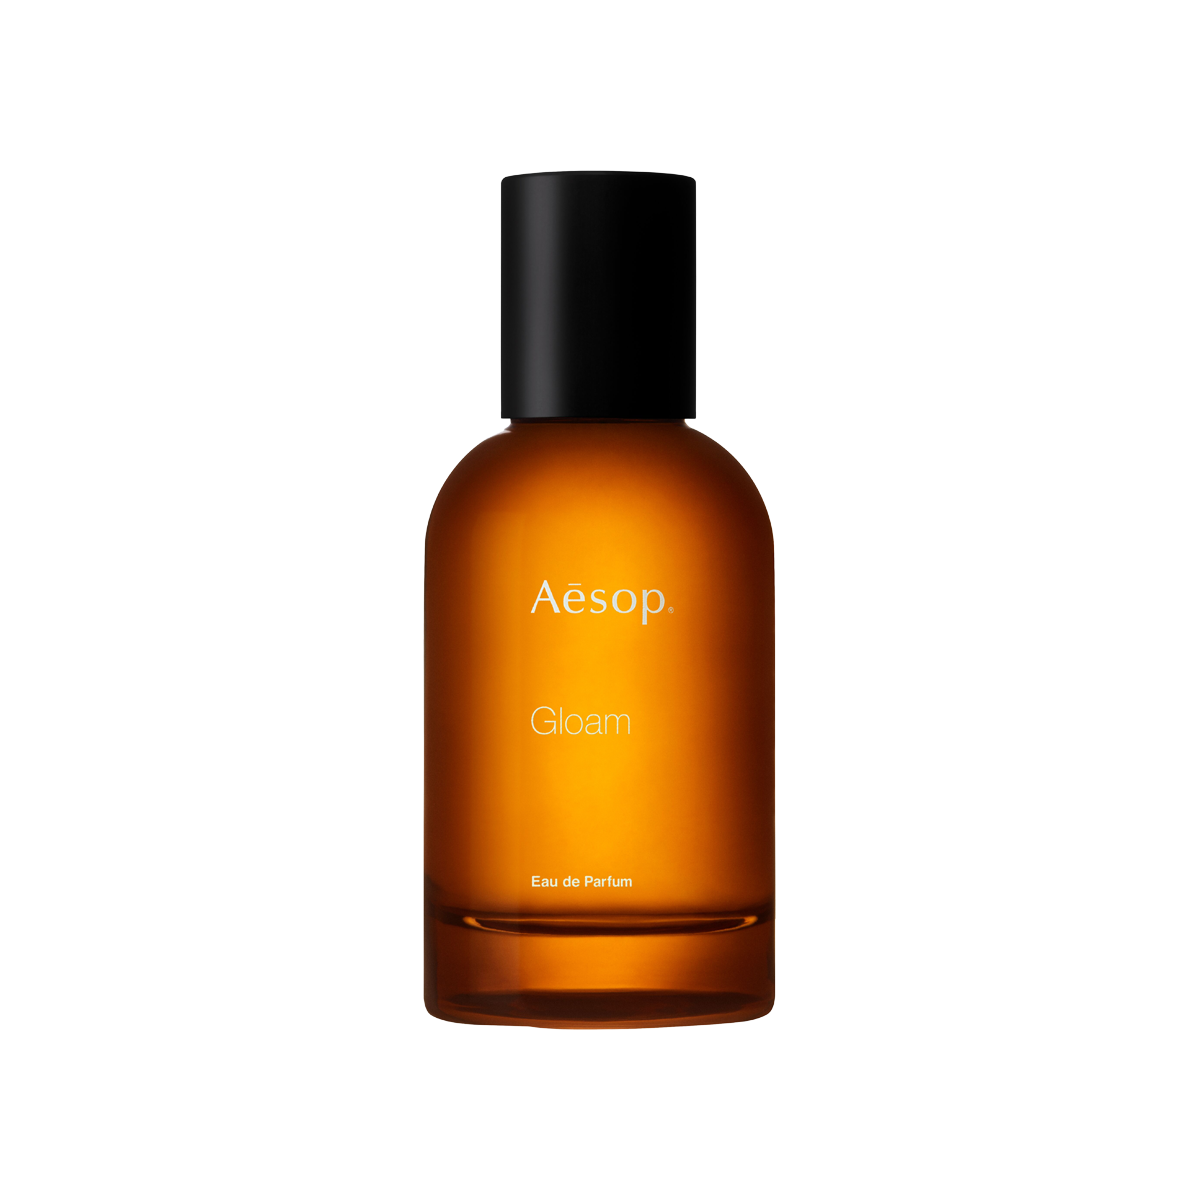 Aesop - Gloam Eau de Parfum